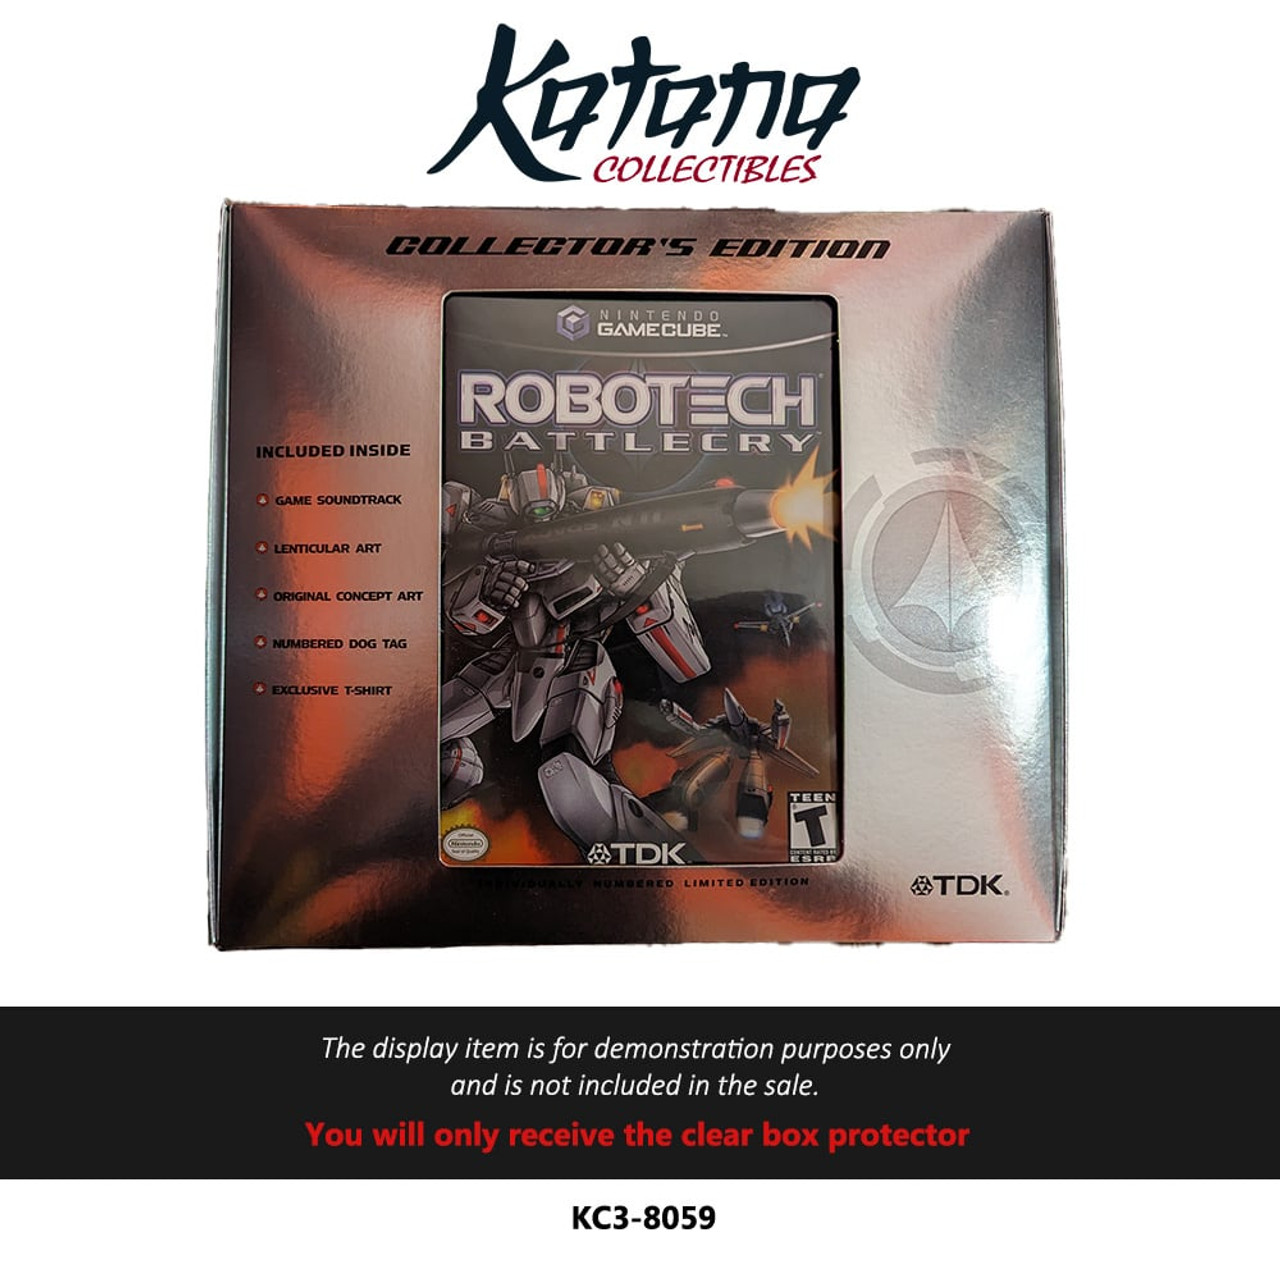 Katana Collectibles Protector For Robotech Battlecry Collector's Edition